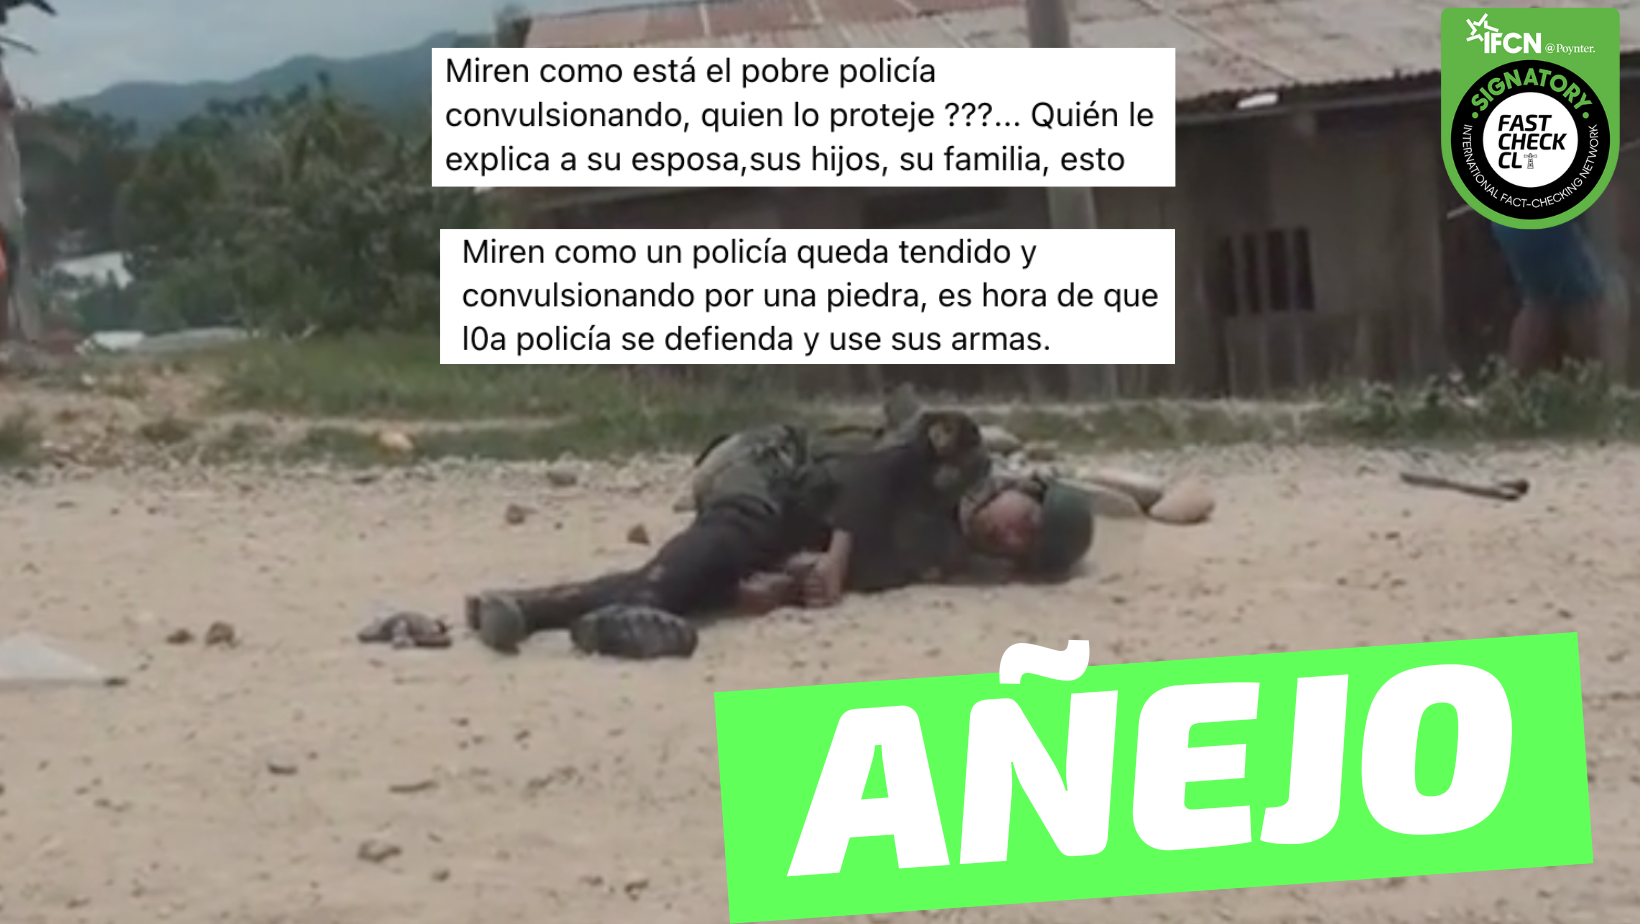 You are currently viewing (Video) “Miren como un policía queda tendido y convulsionando” en Perú: #Añejo